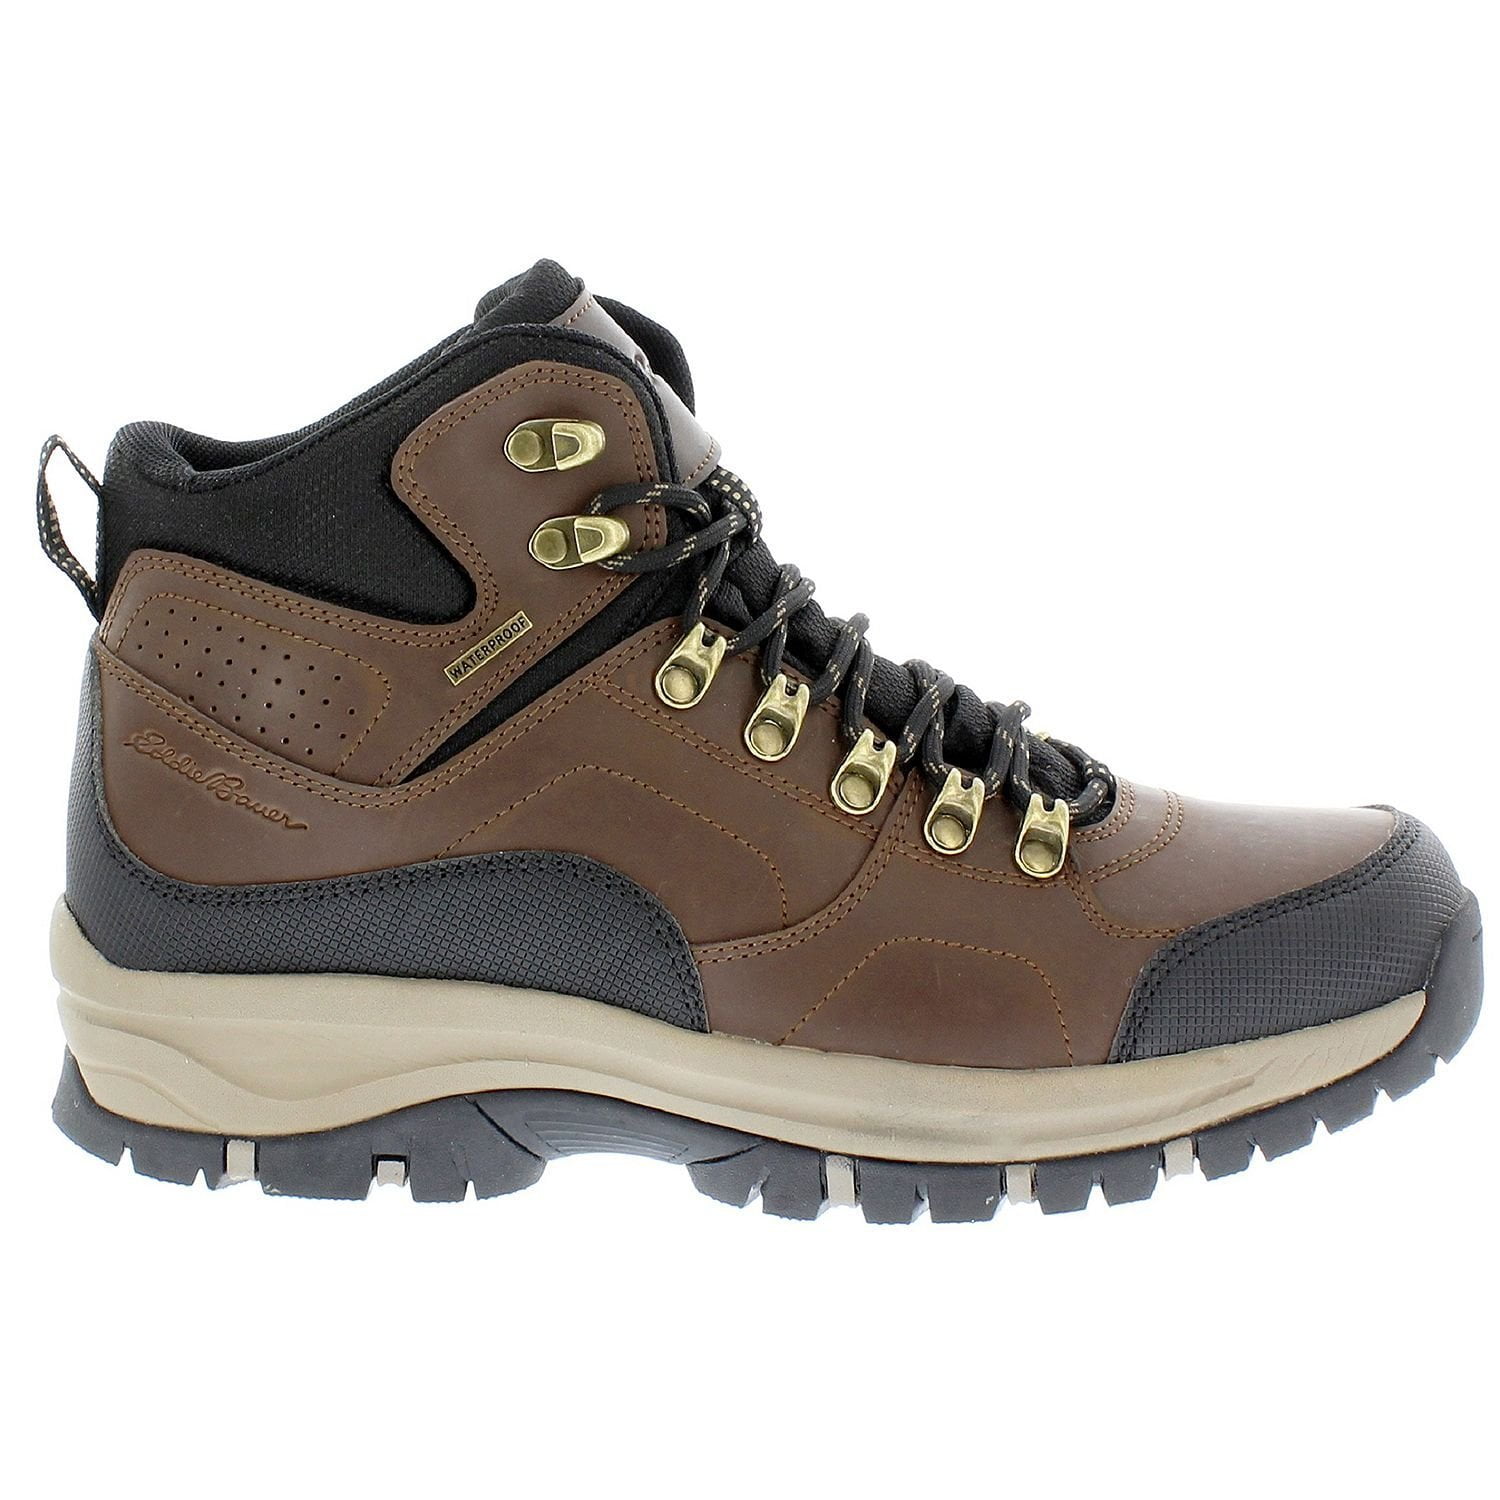 Eddie Bauer Mens Brad Waterproof Hiking Boot (Brown, 10.5) - Walmart.com